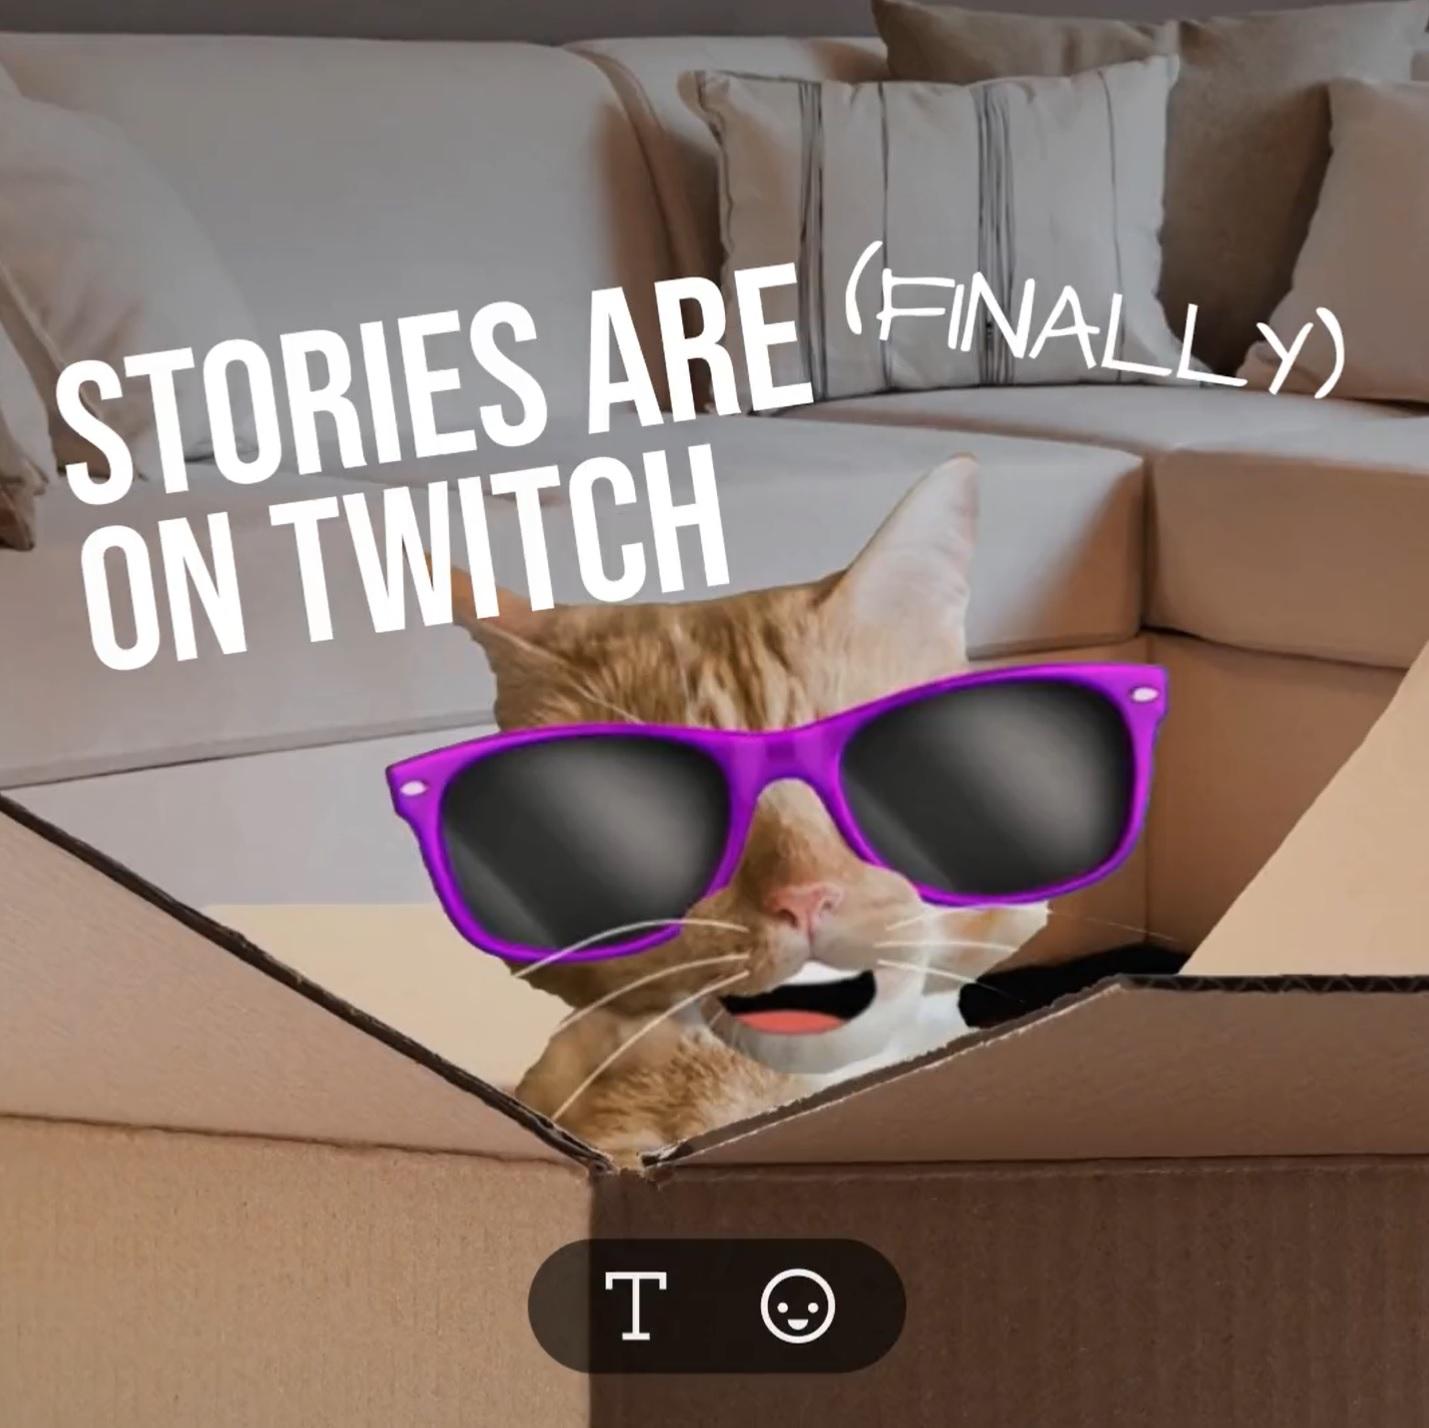 Une histoire Twitch avec un chat portant des lunettes de soleil.